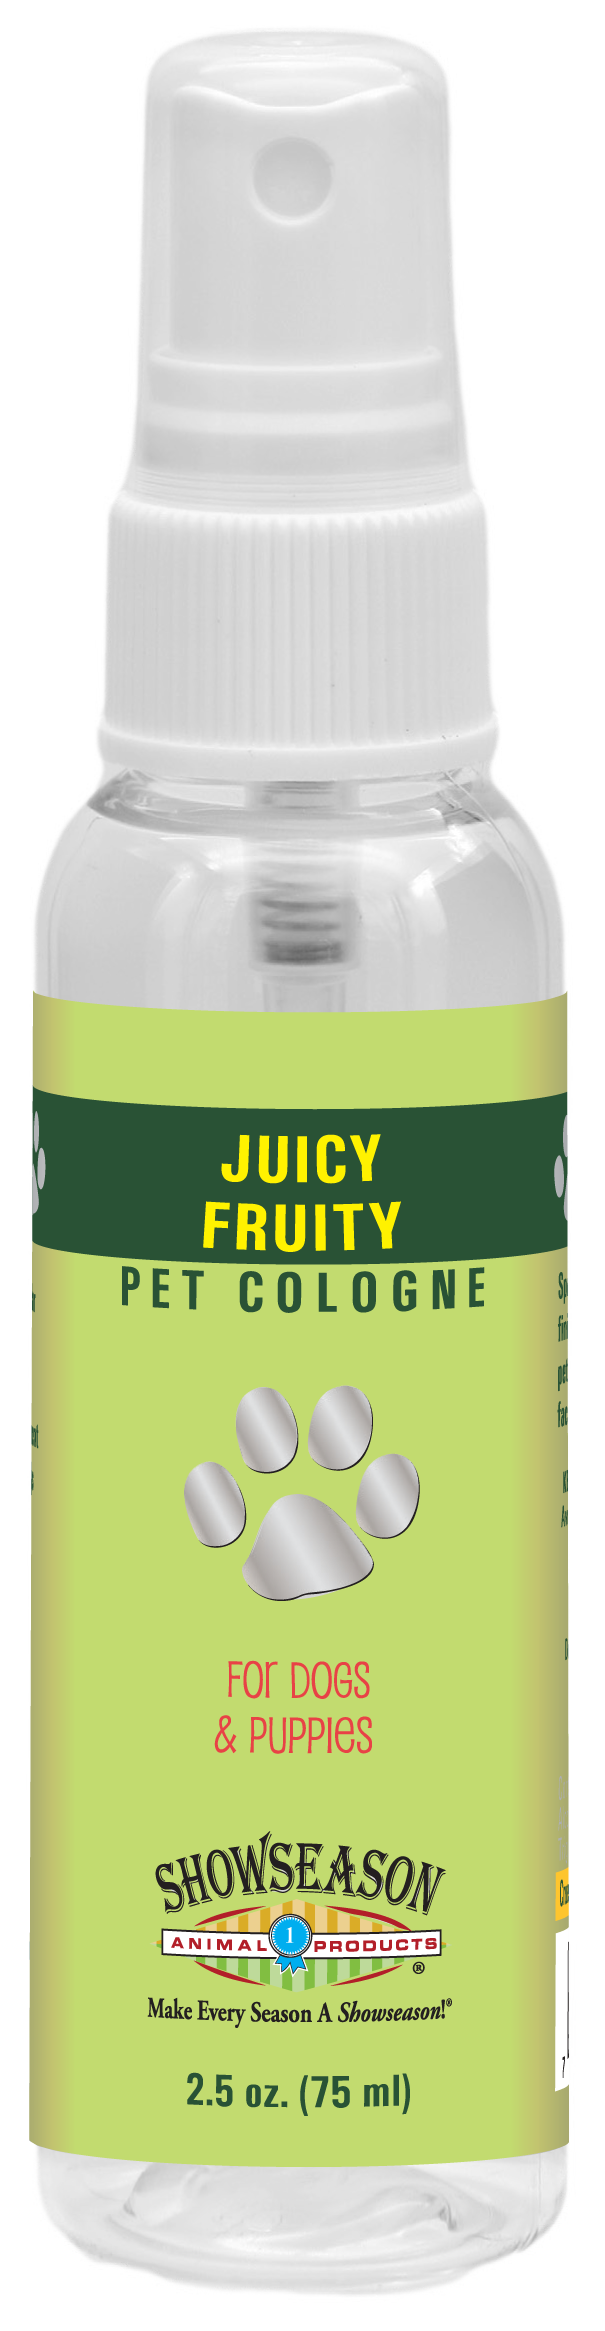 Juicy Fruity Pet Cologne